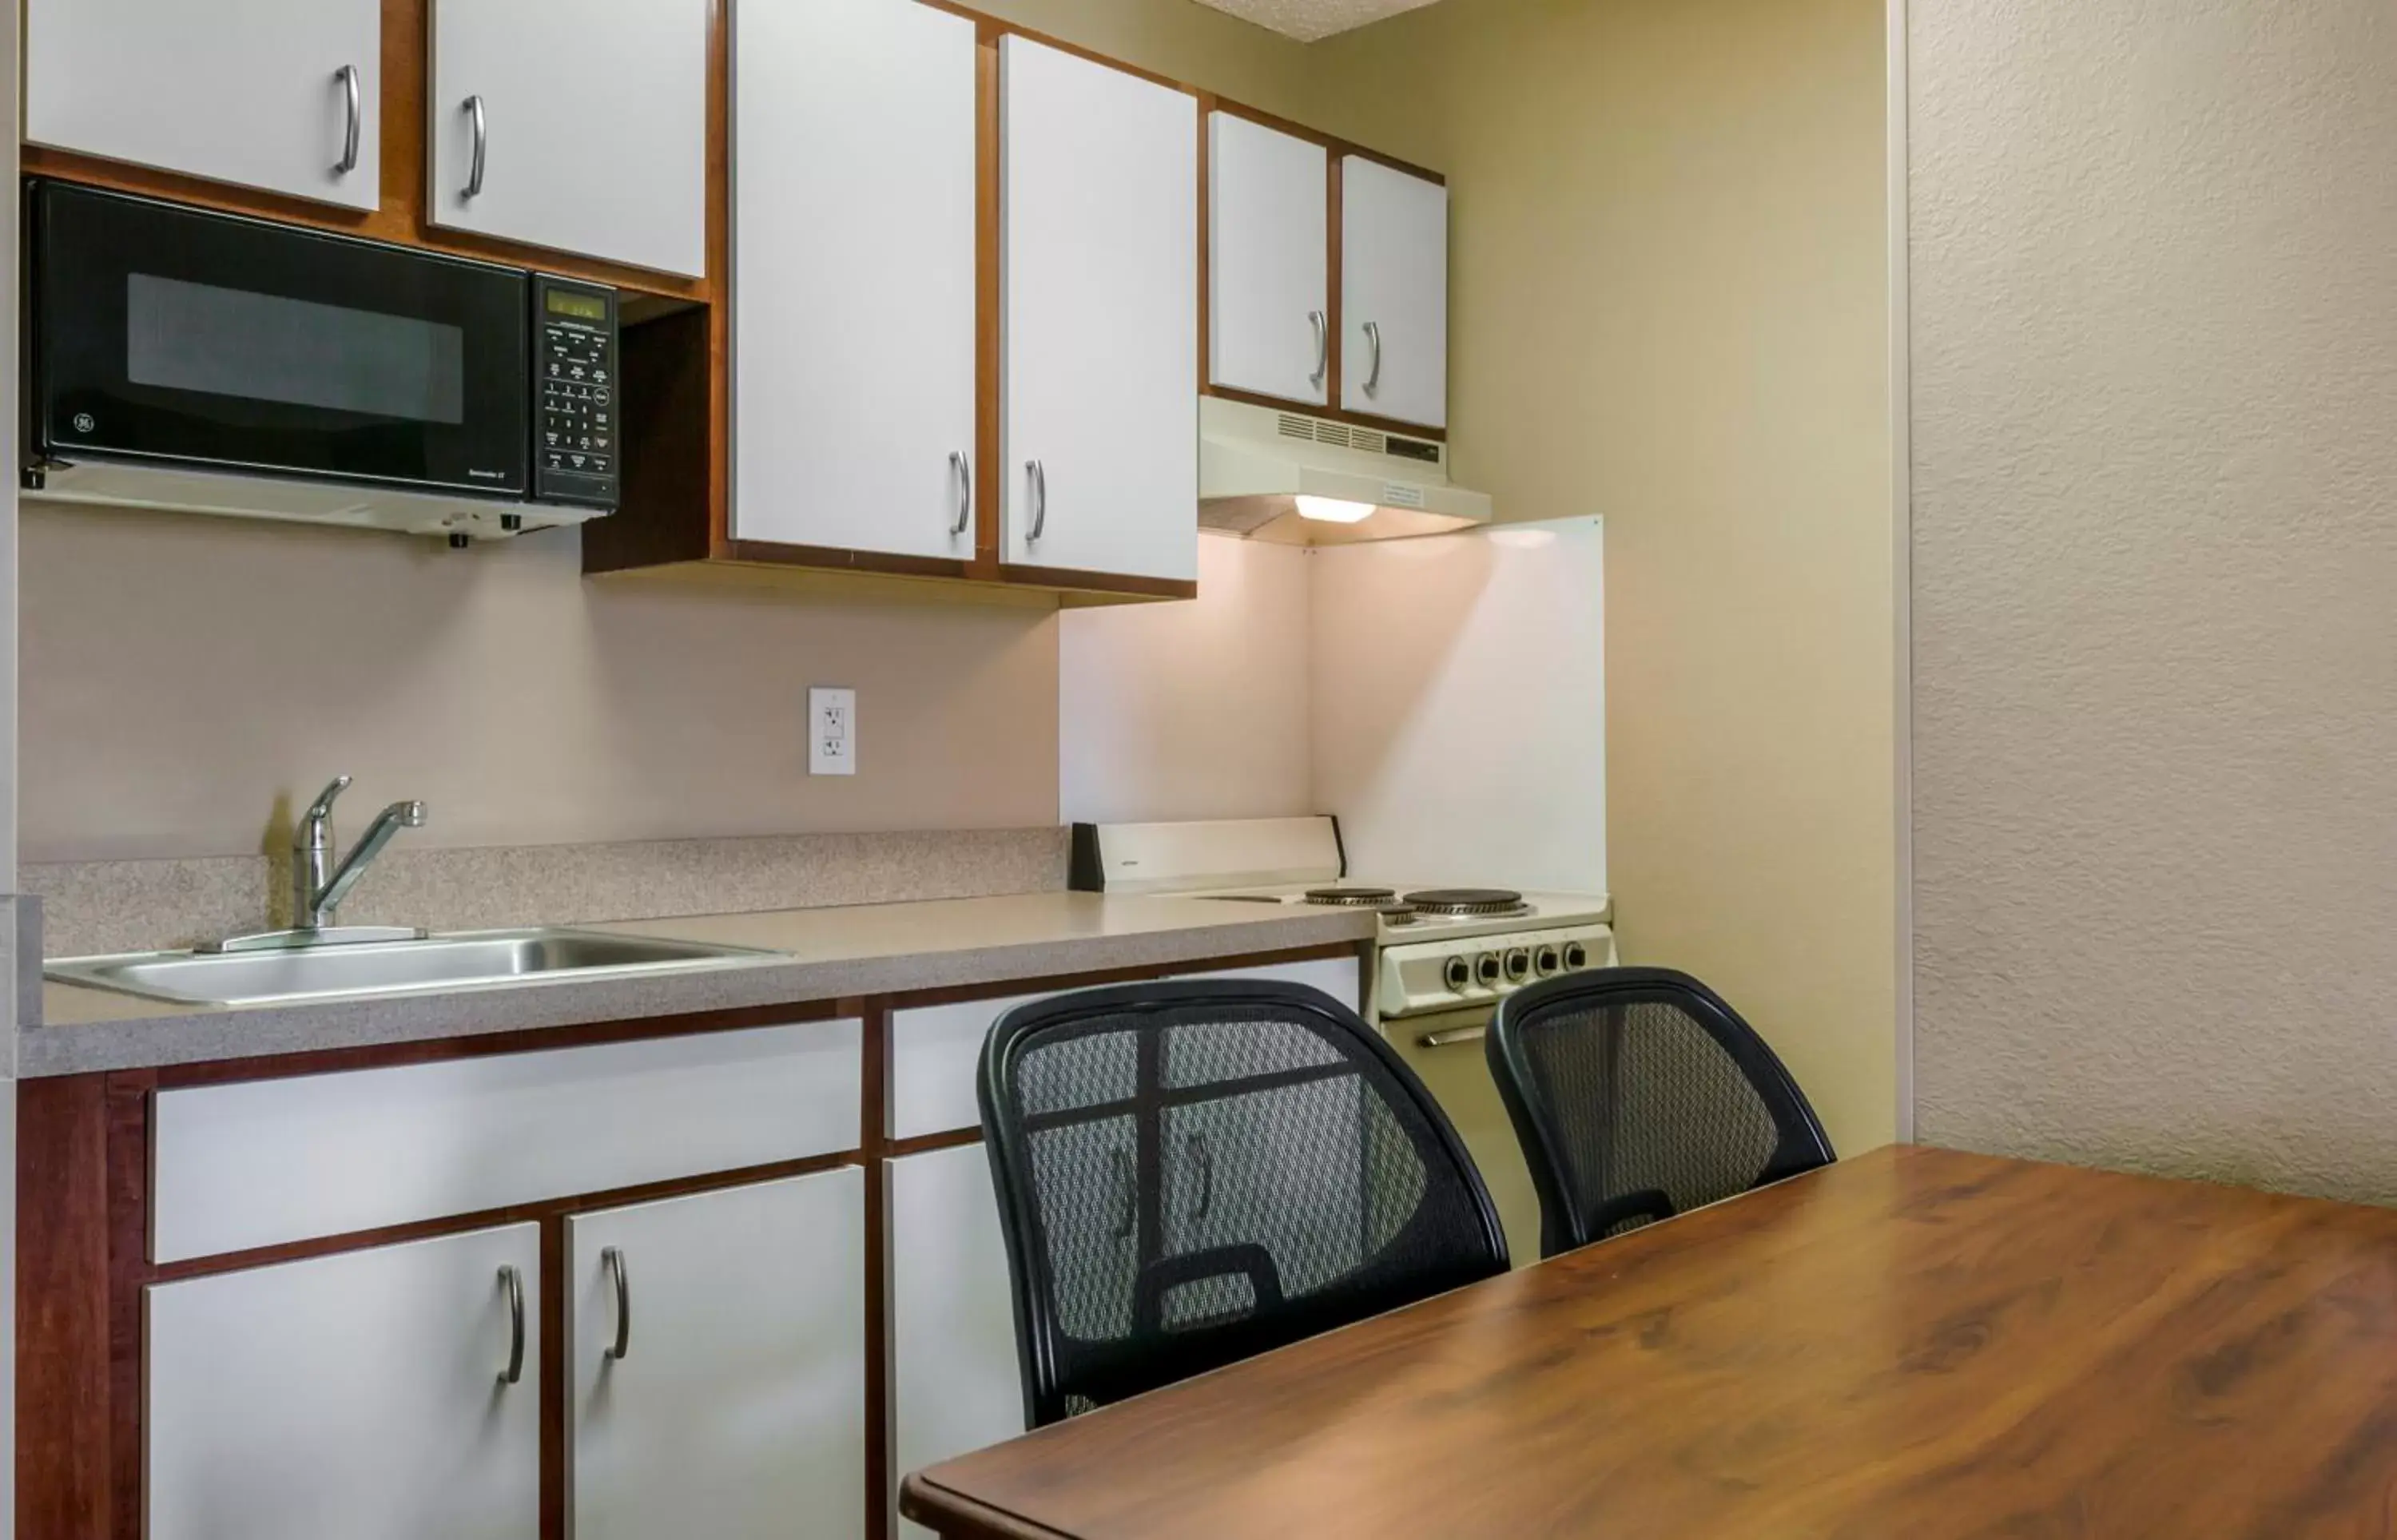 Kitchen or kitchenette, Kitchen/Kitchenette in Extended Stay America Suites - El Paso - West